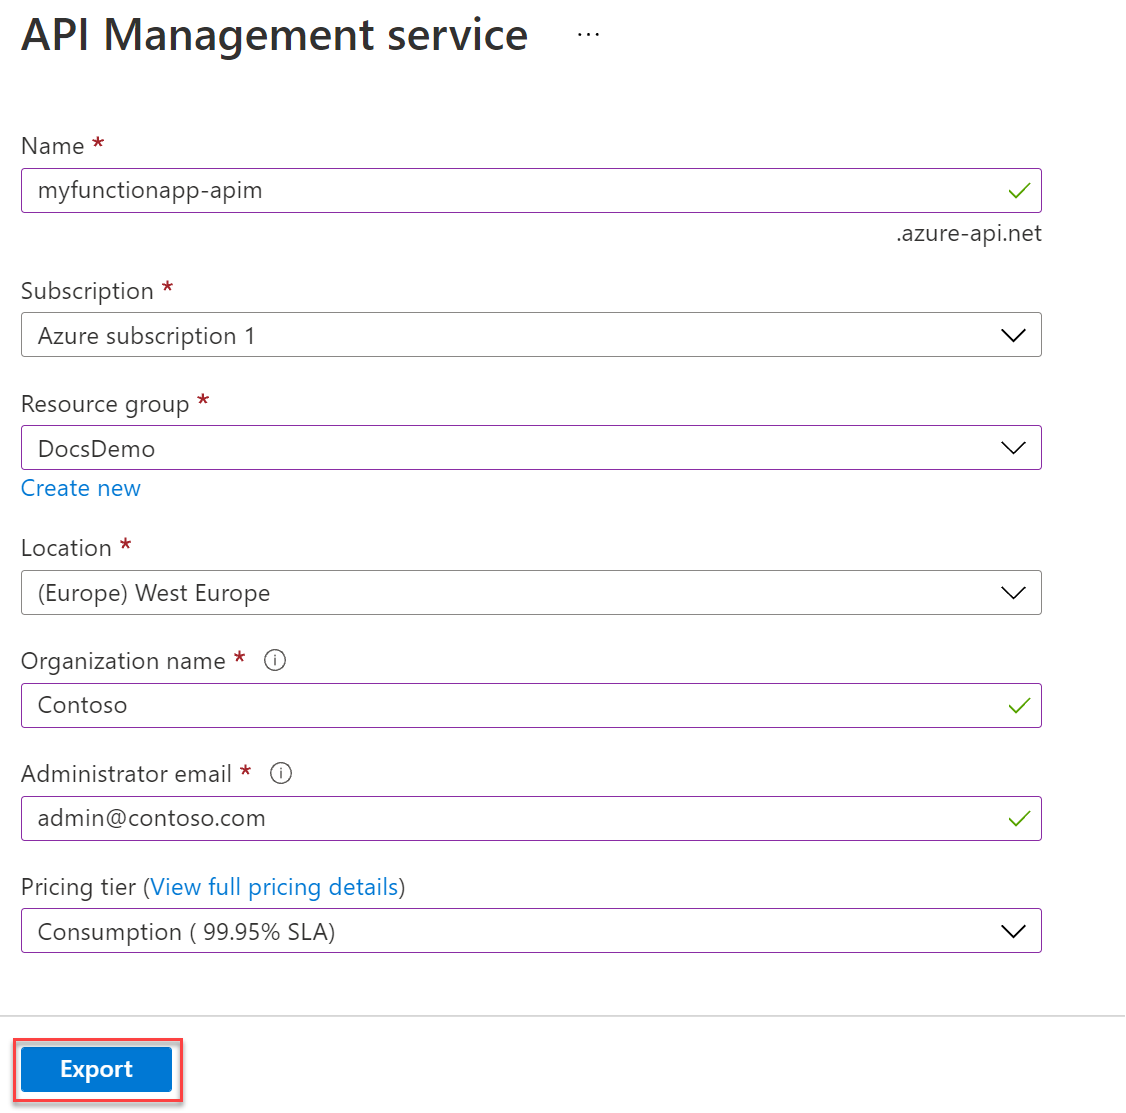 Criar novo serviço de Gestão de API